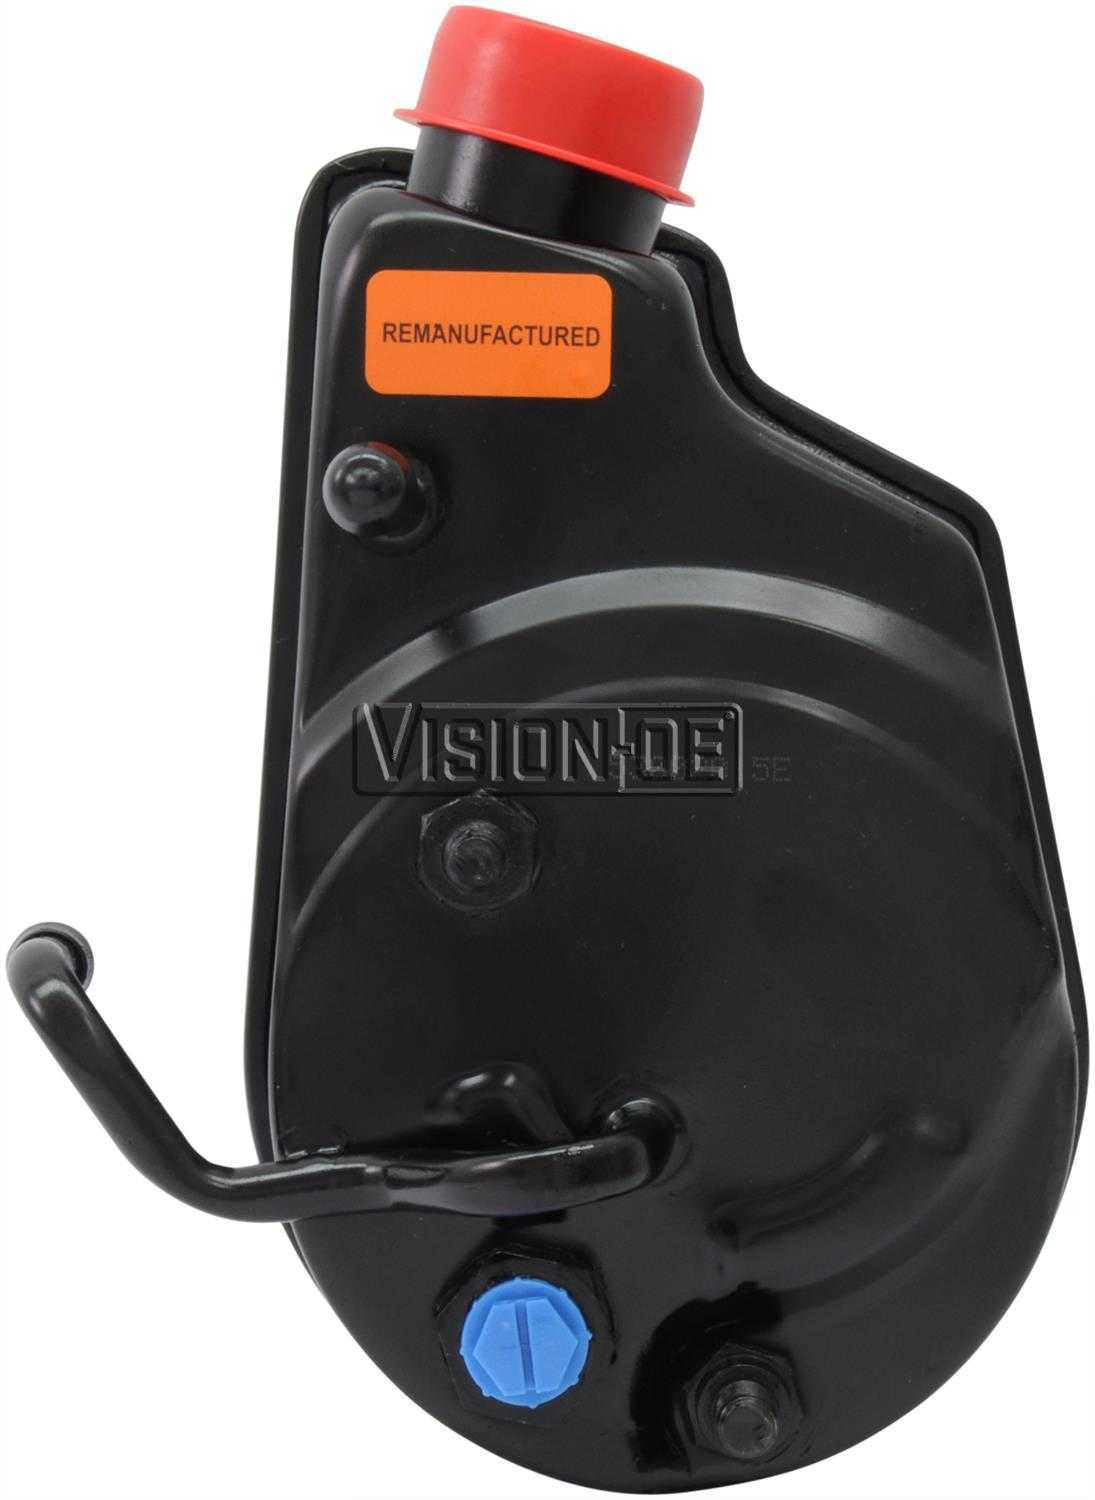 VISION-OE - Reman Power Steering Pump - VOE 731-2275